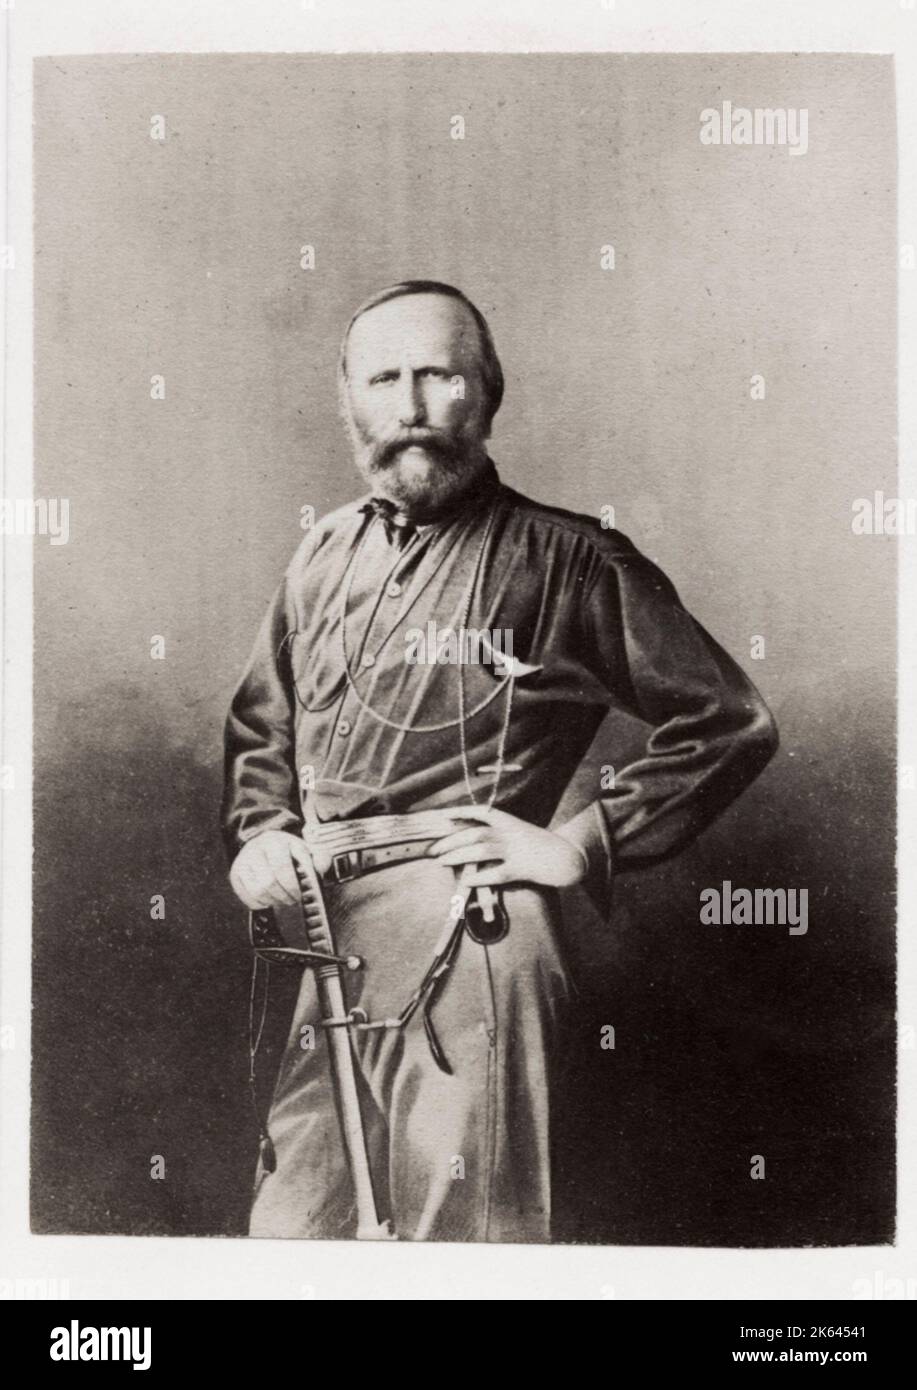 Vintage 19. Jahrhundert Foto: Giuseppe Maria Garibaldi war ein italienischer General, Patriot und Republikaner. Er trug zur Vereinigung Italiens und zur Gründung des Königreichs Italien bei. Stockfoto